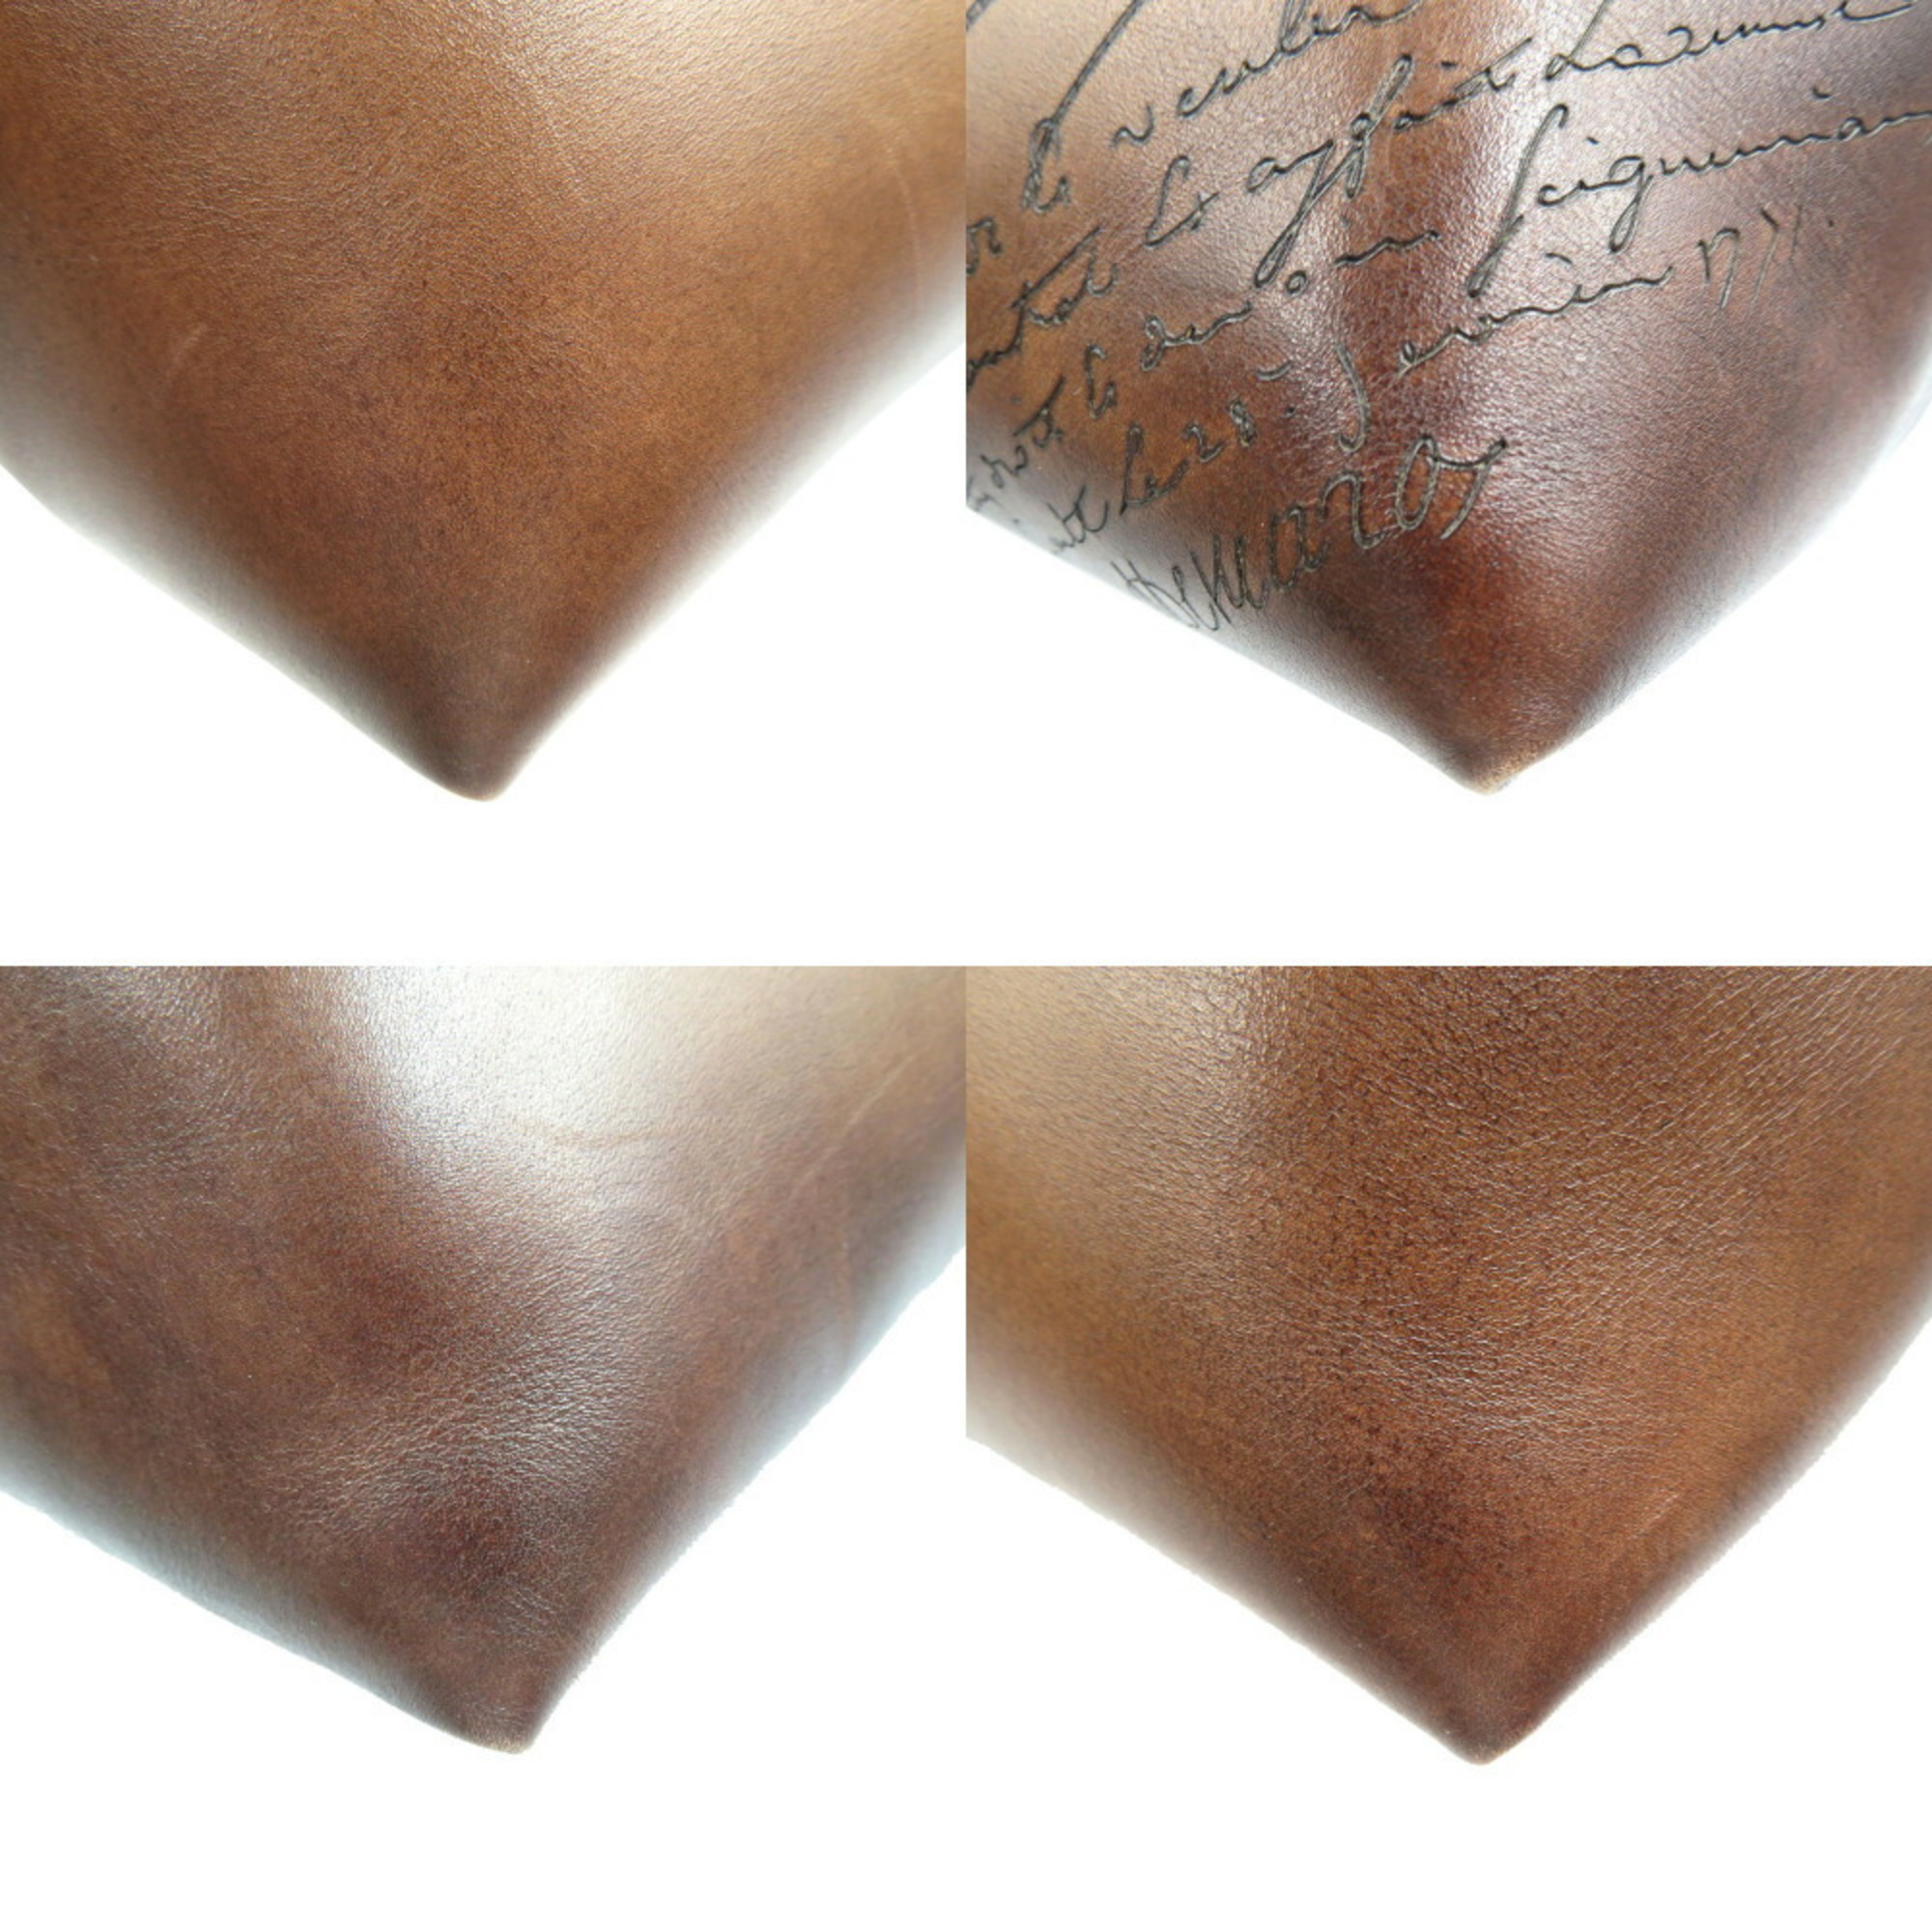 Berluti Leather Brown Clutch Bag 0175BERLUTI